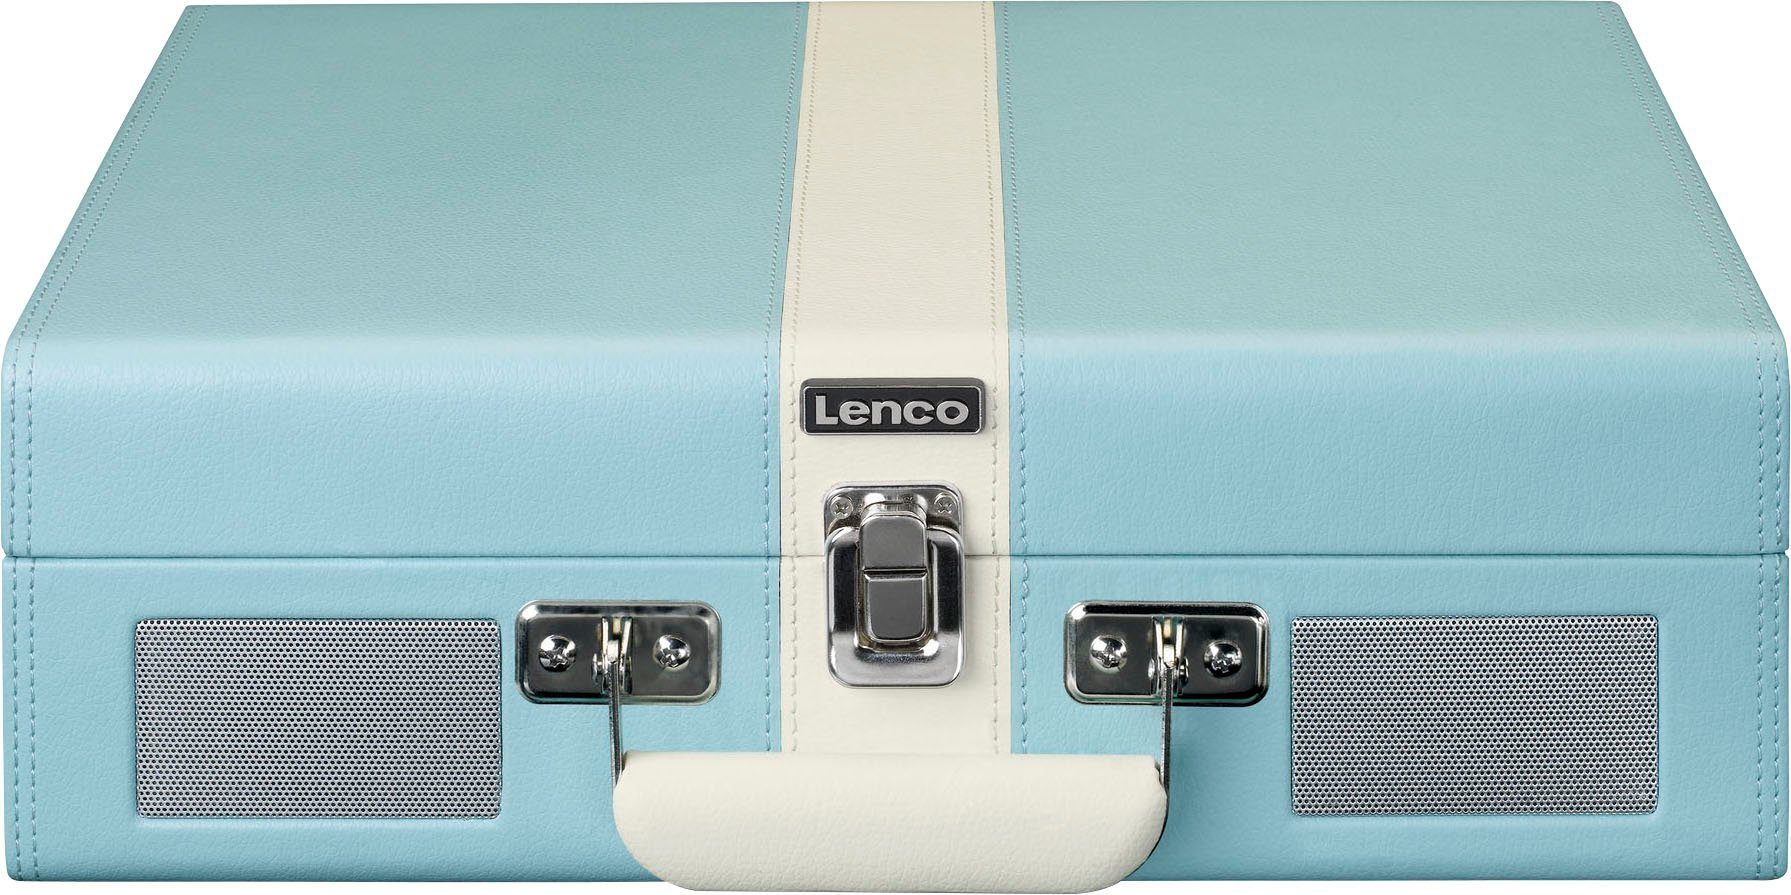 Lenco Blau-Weiß und Koffer-Plattenspieler BT (Riemenantrieb) eingebauten Lsp. Plattenspieler mit